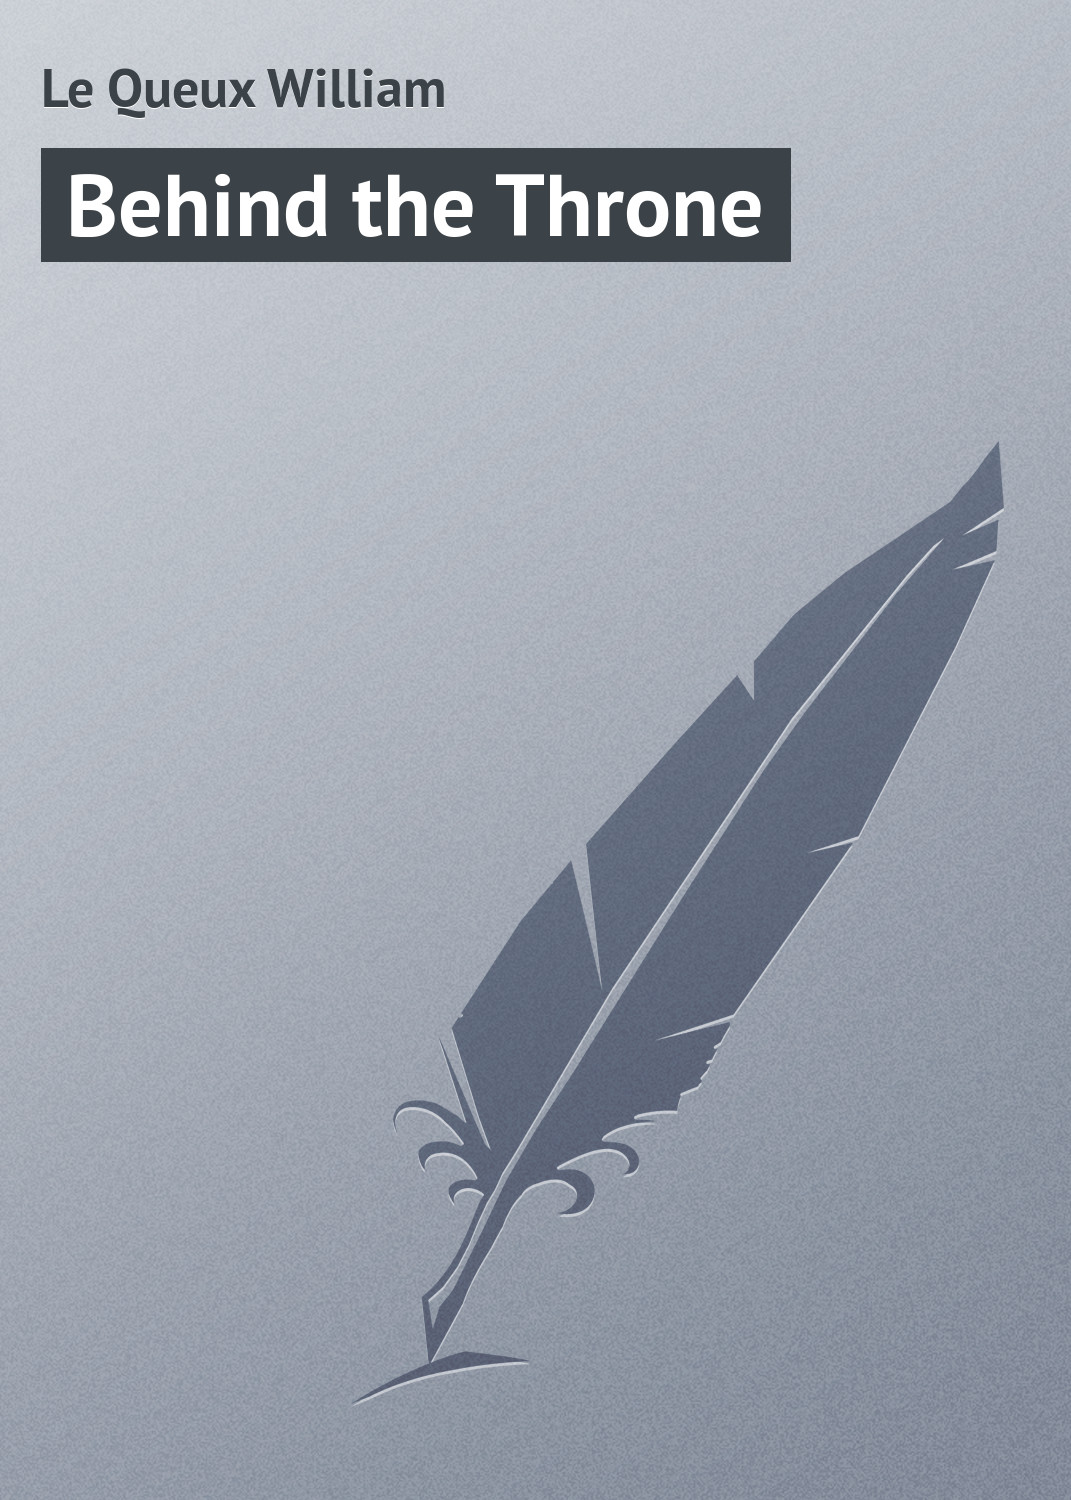 Книга Behind the Throne из серии , созданная William Le Queux, может относится к жанру Зарубежная классика, Зарубежные любовные романы. Стоимость электронной книги Behind the Throne с идентификатором 23157491 составляет 5.99 руб.